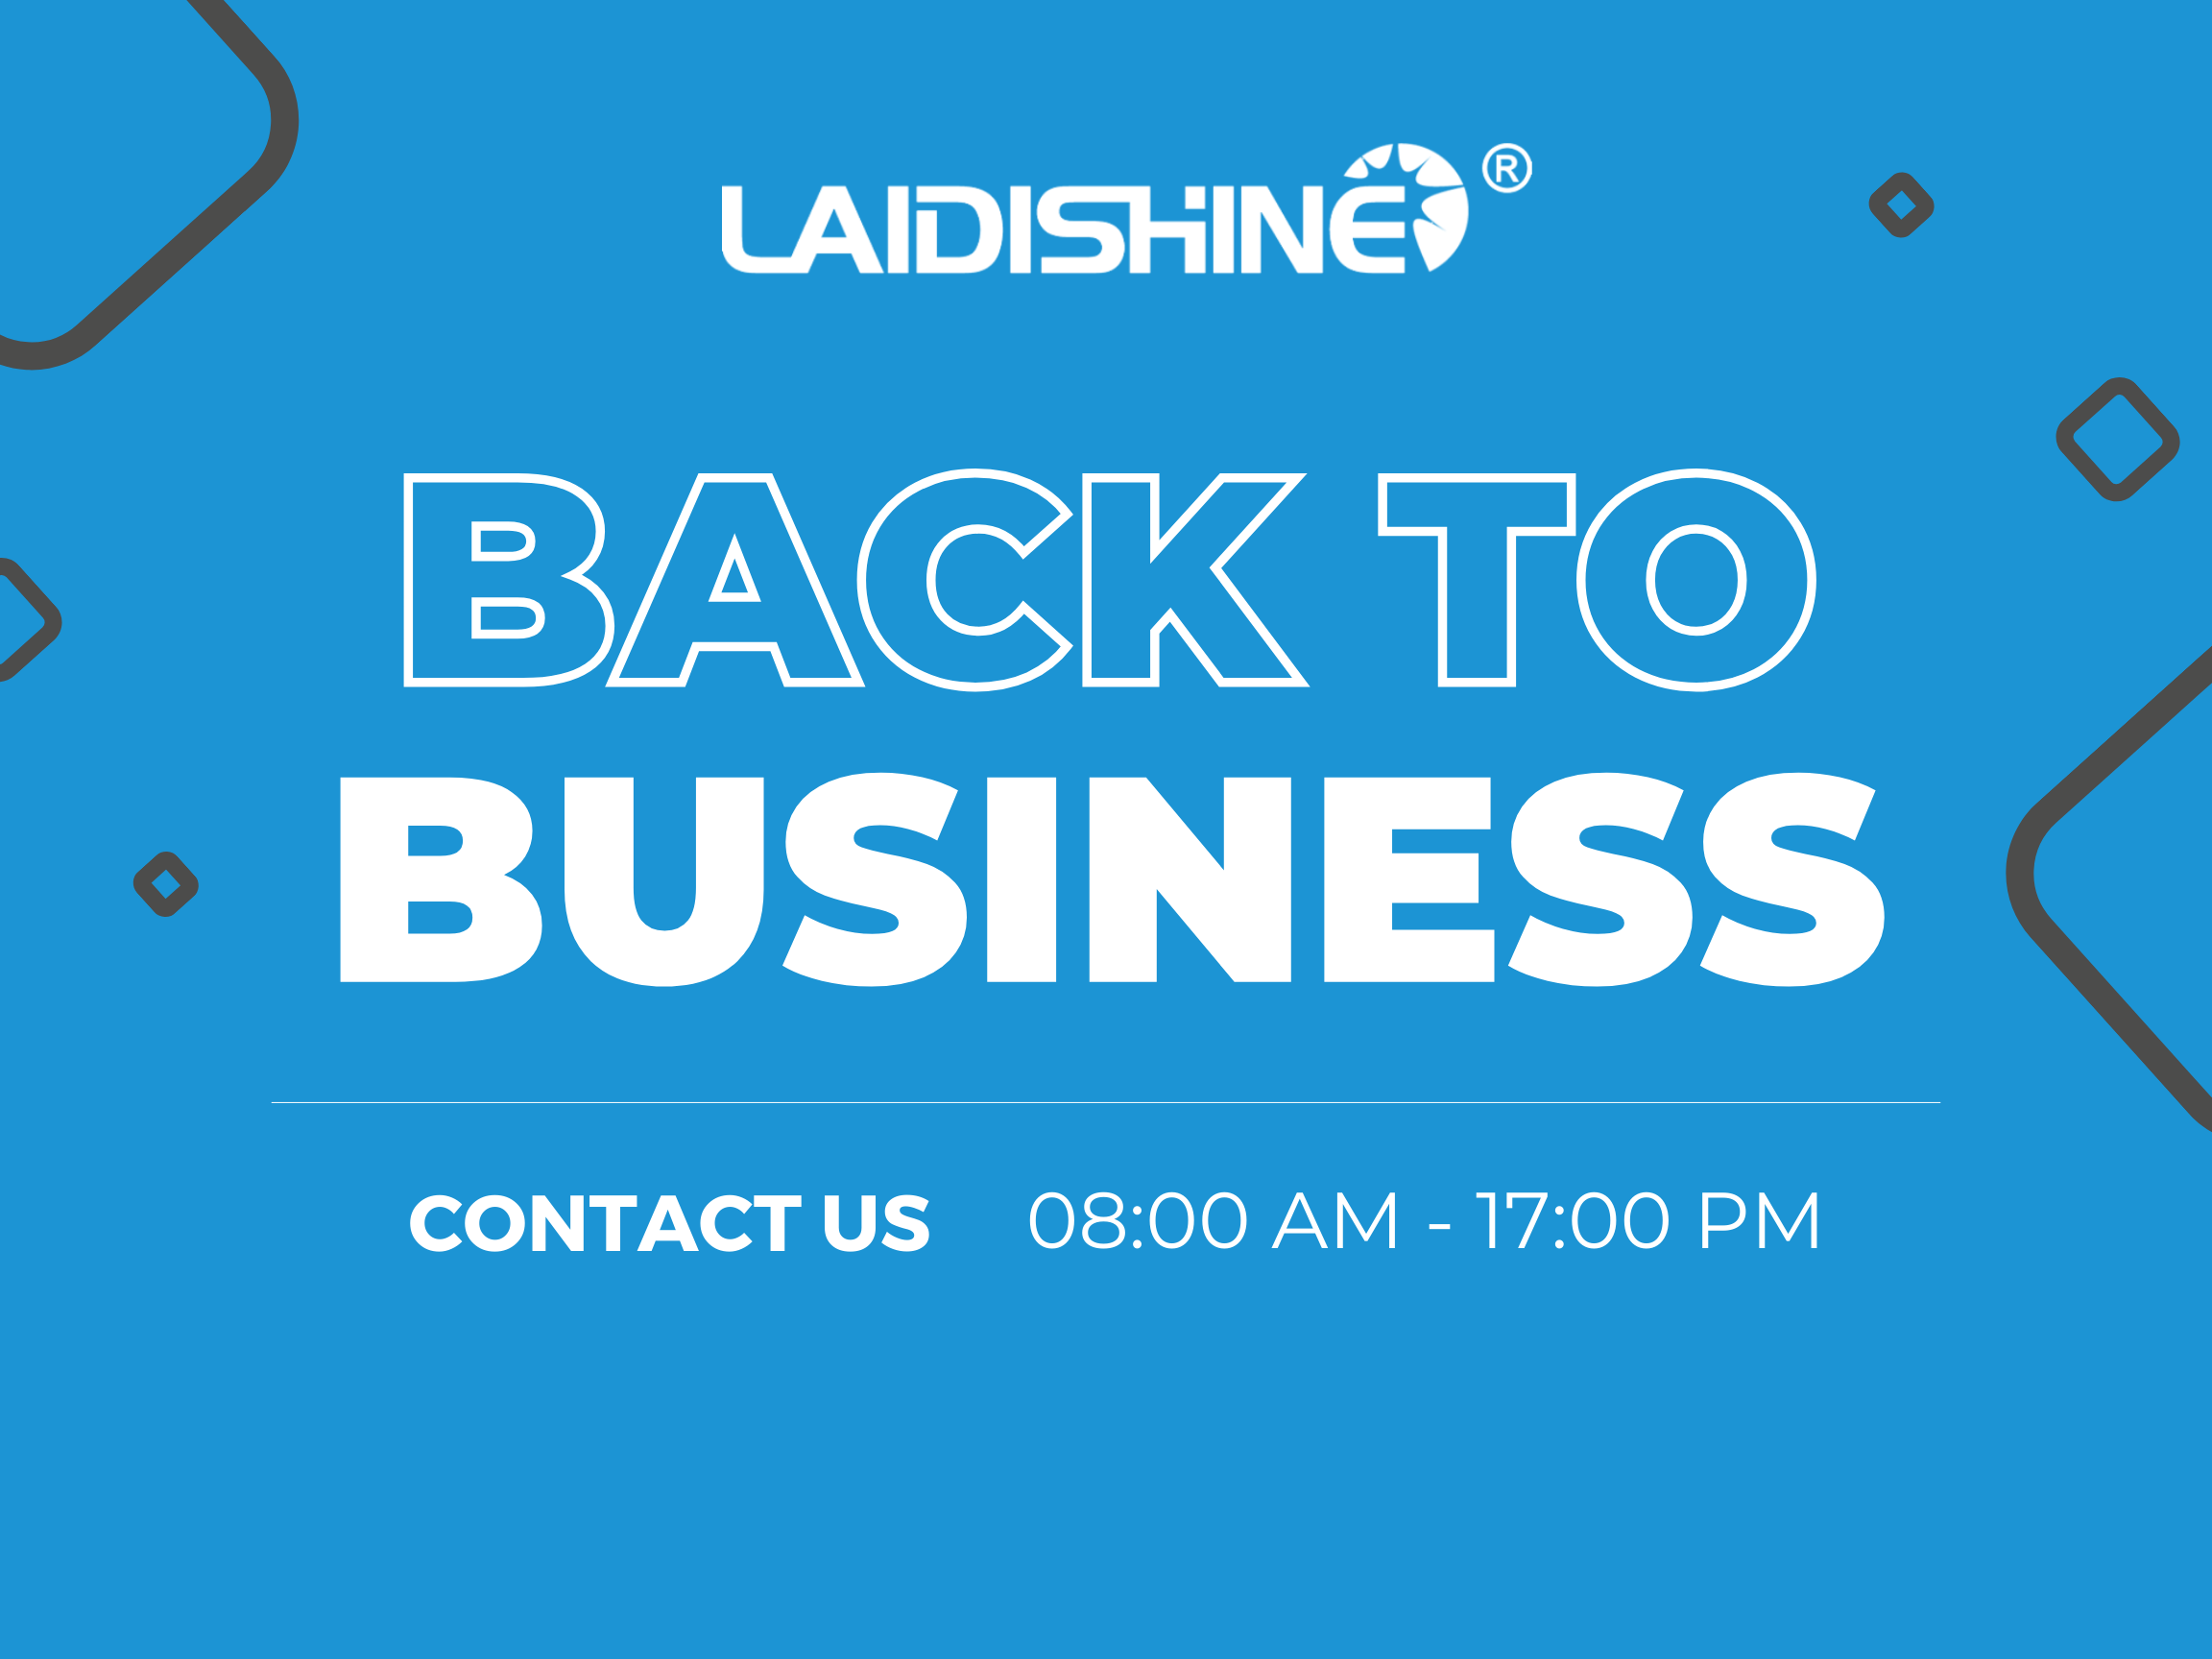 Laidishine back to business